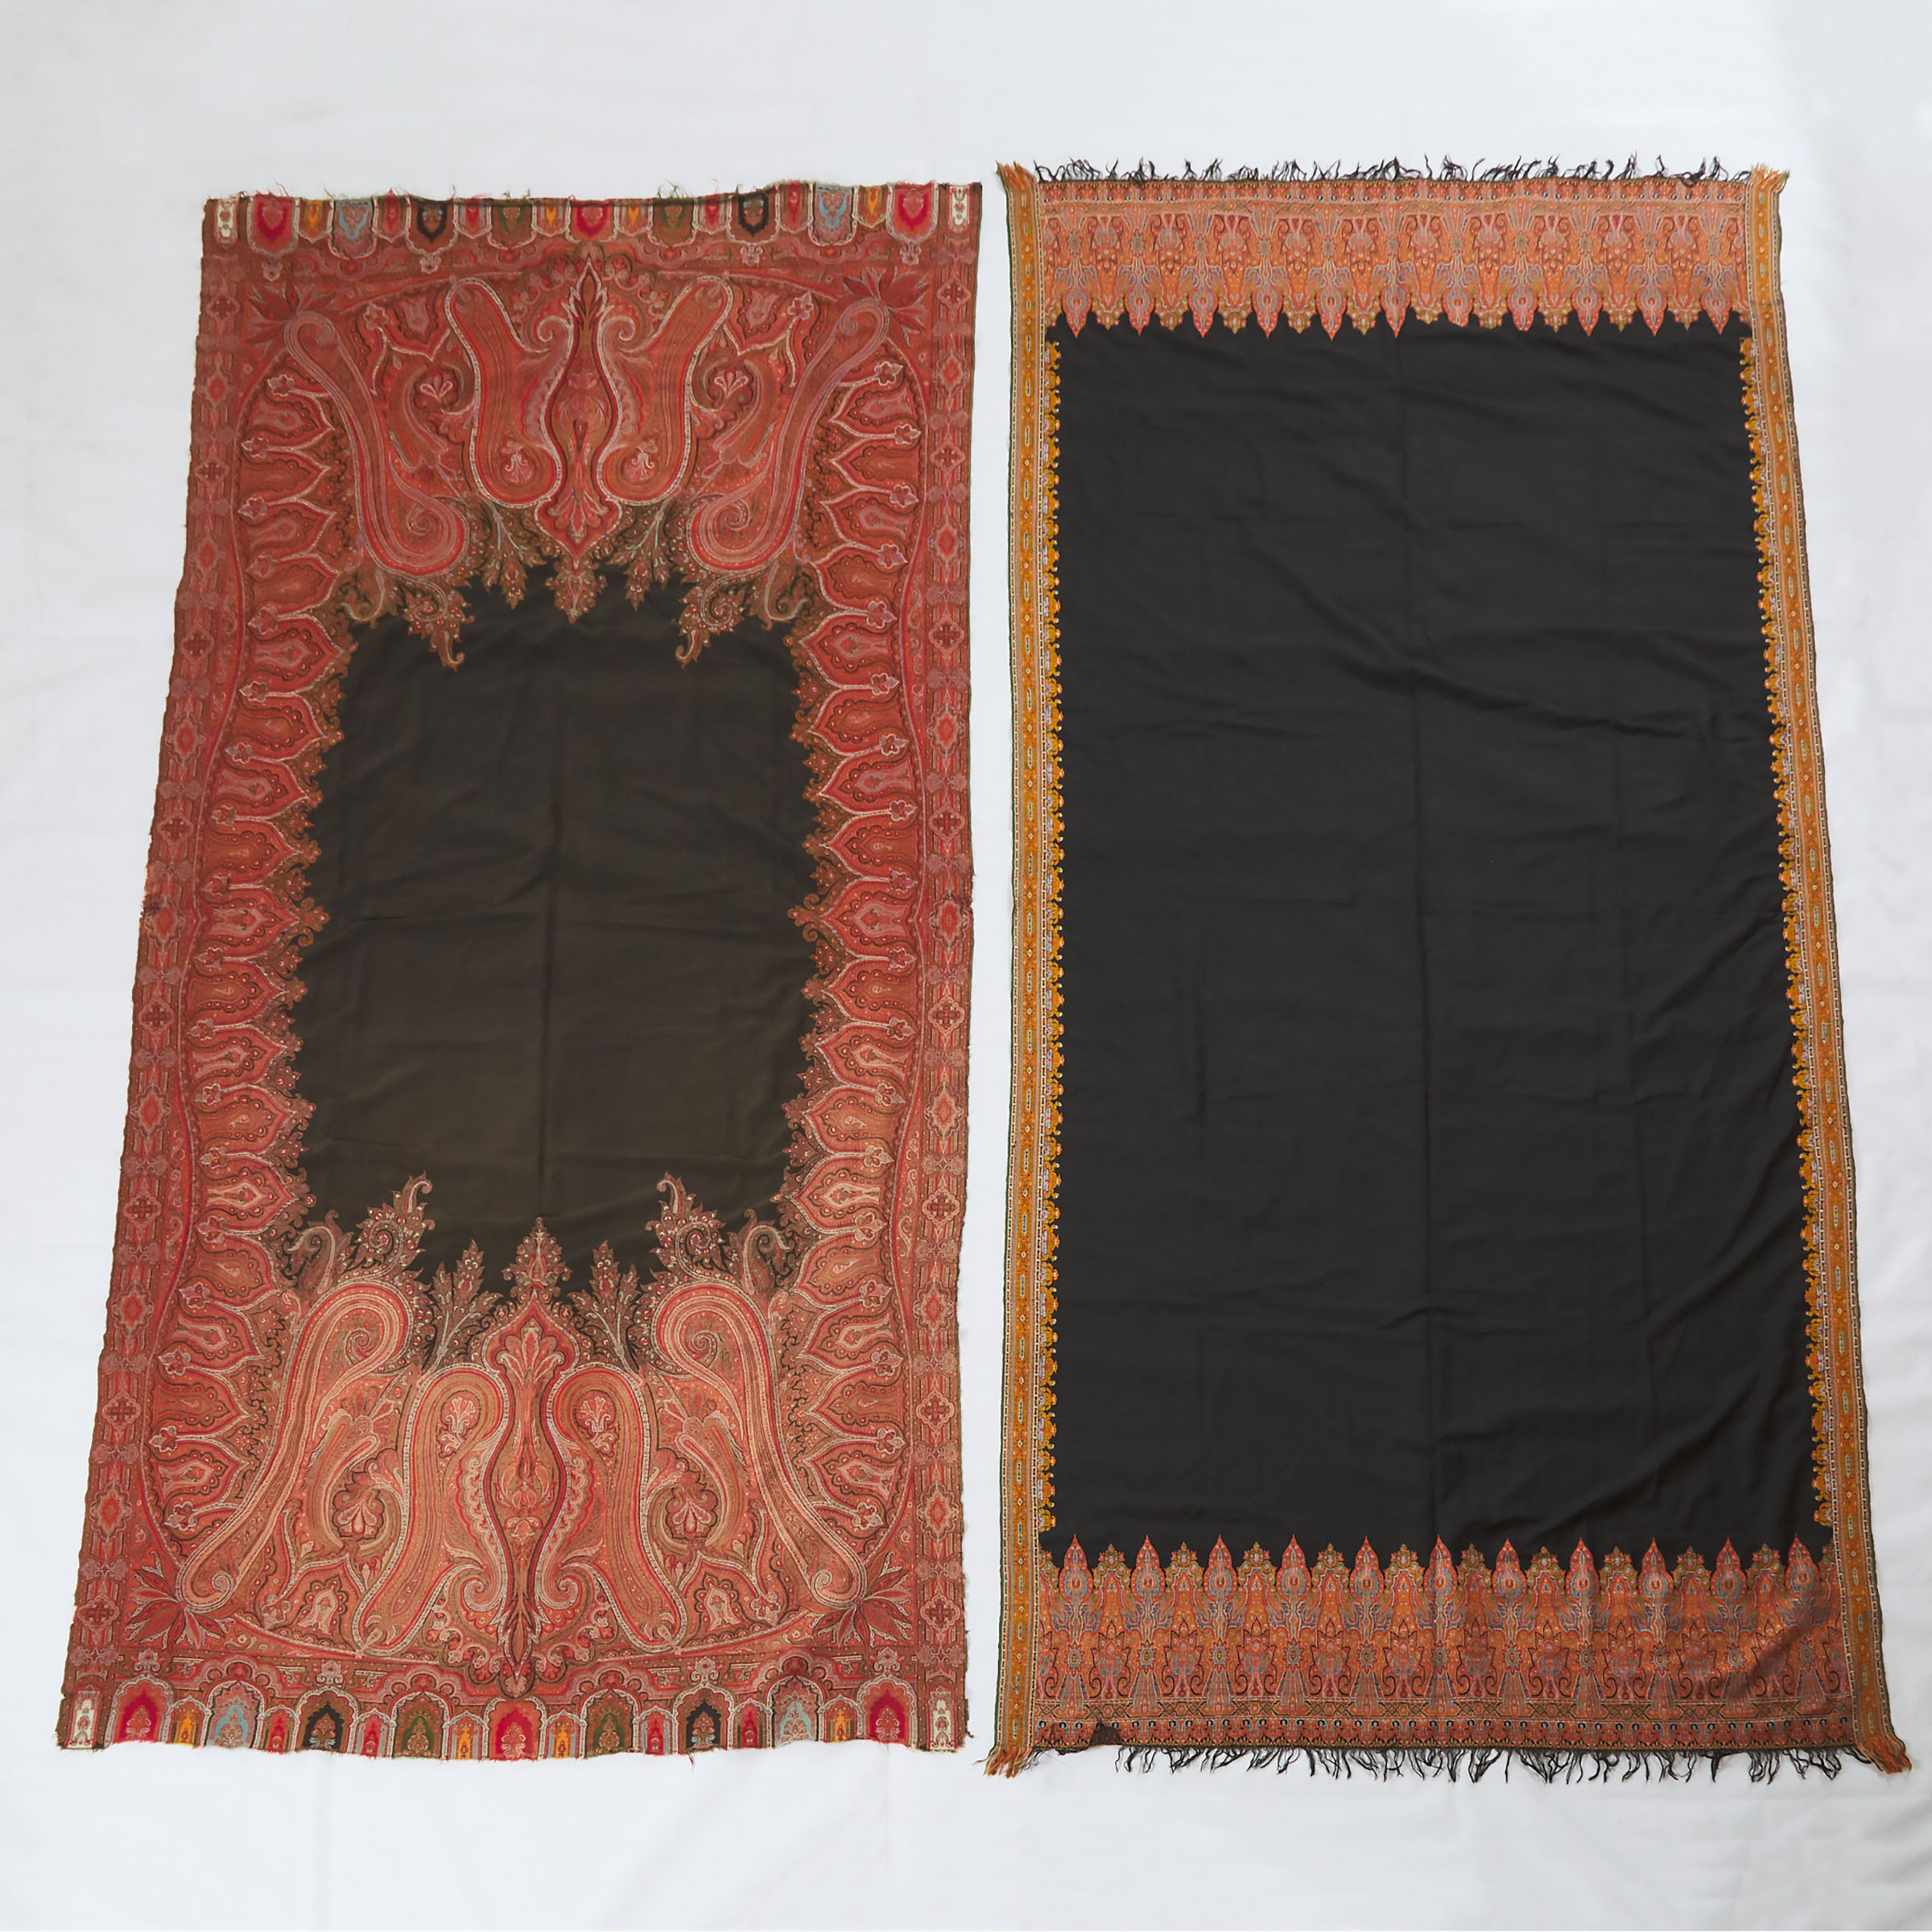 Two Kashmiri Textiles, Late 19th Century